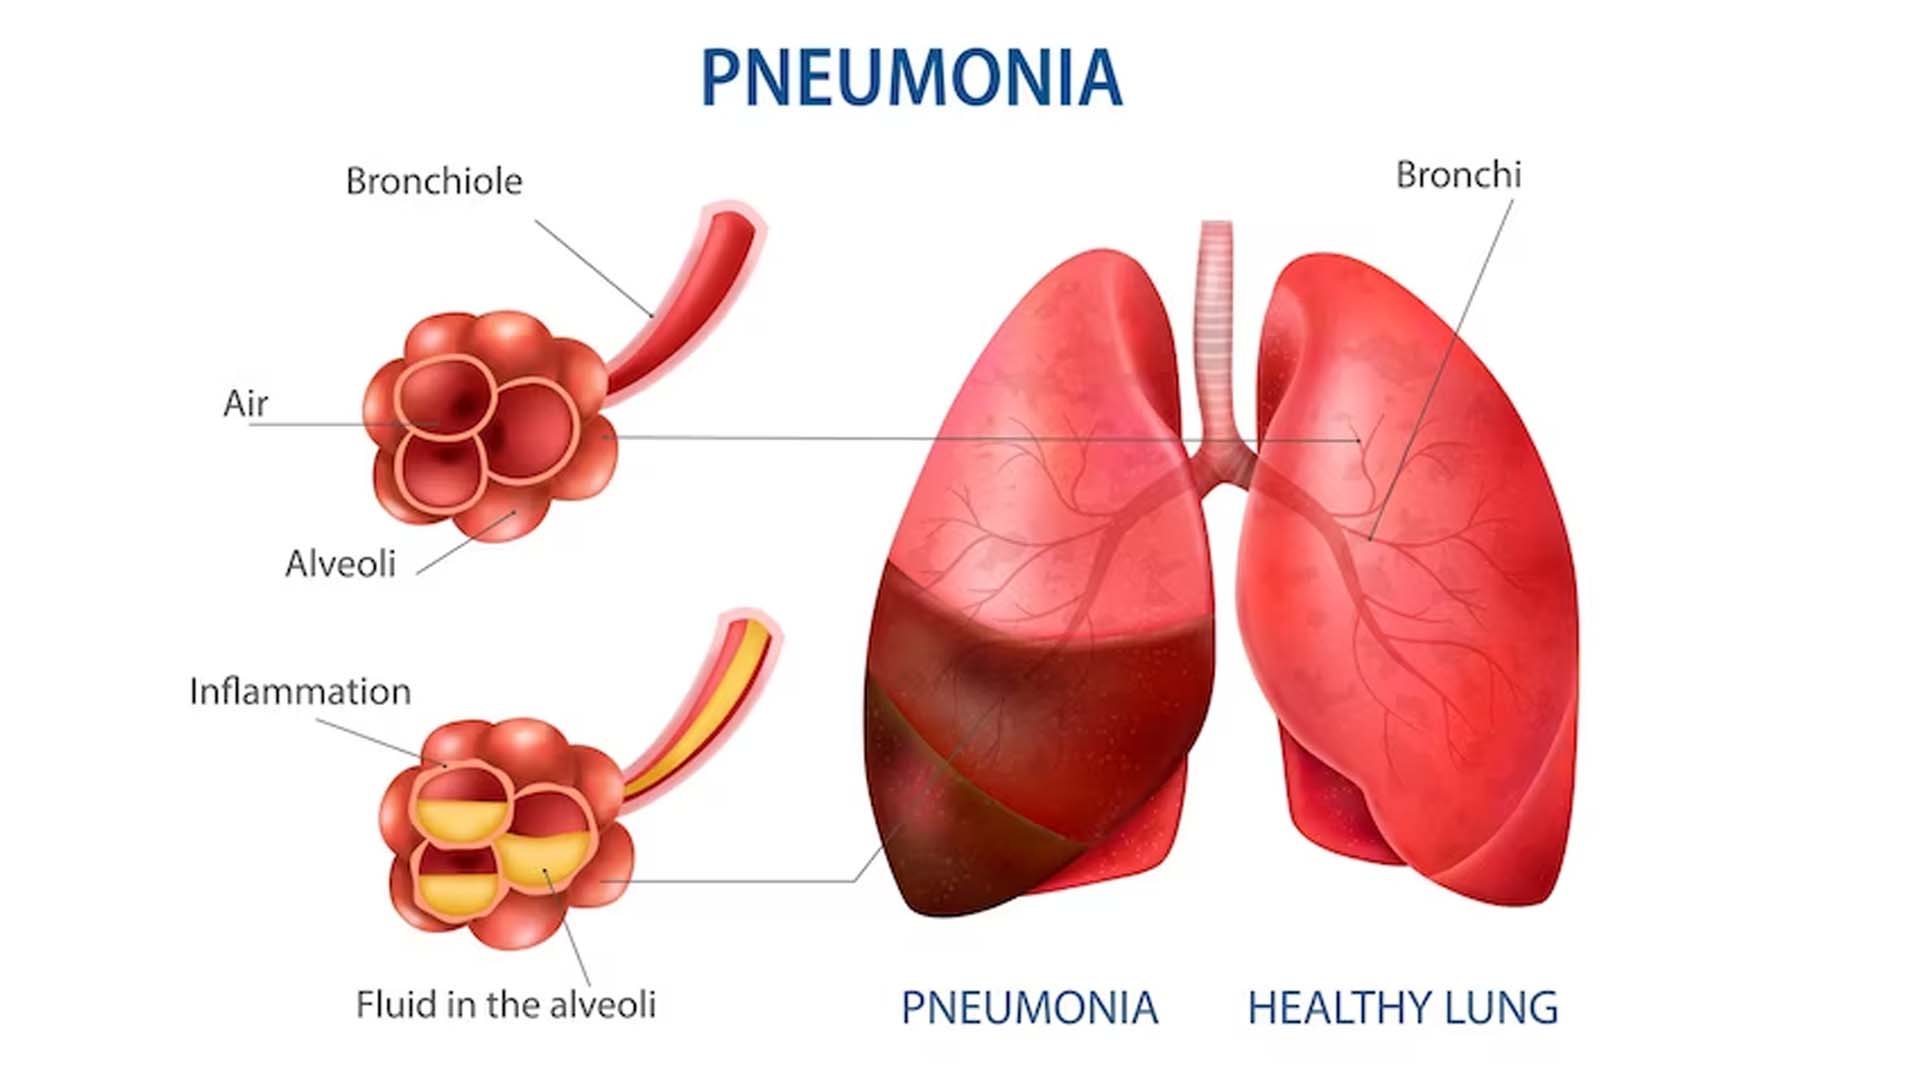 Causes of Pneumonia